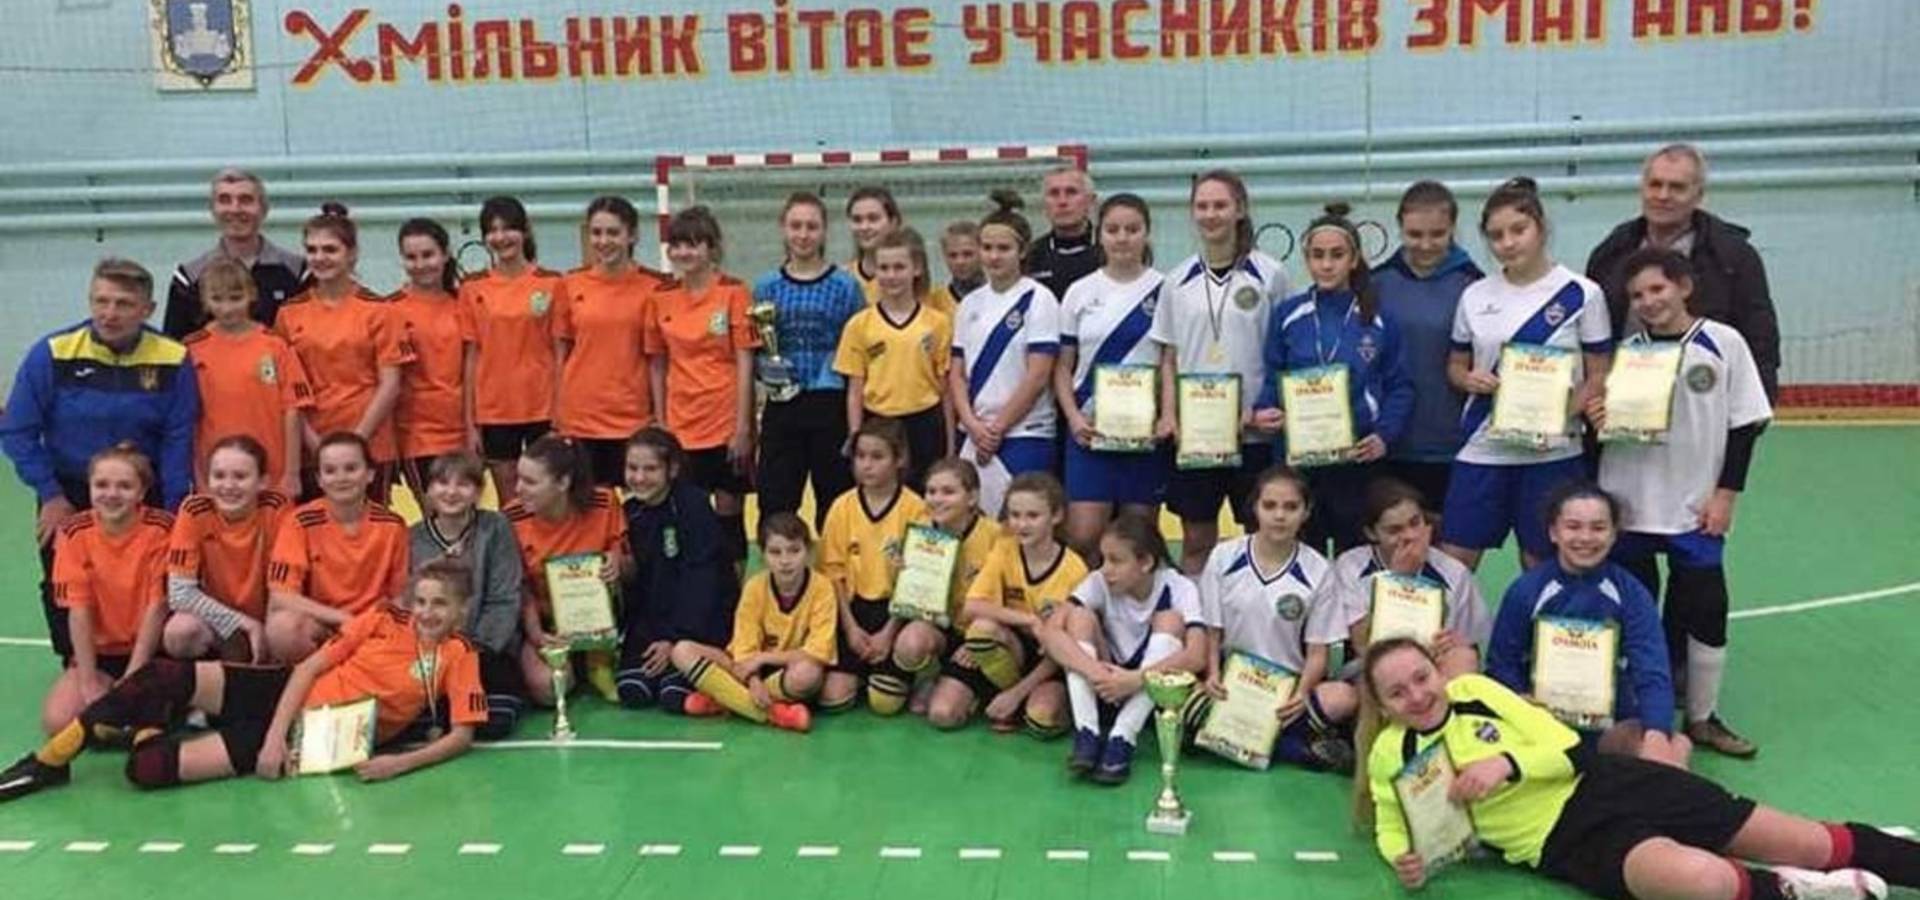 Чемпіонат області з футзалу серед дівчат пройшов у Хмільнику на Вінниччині